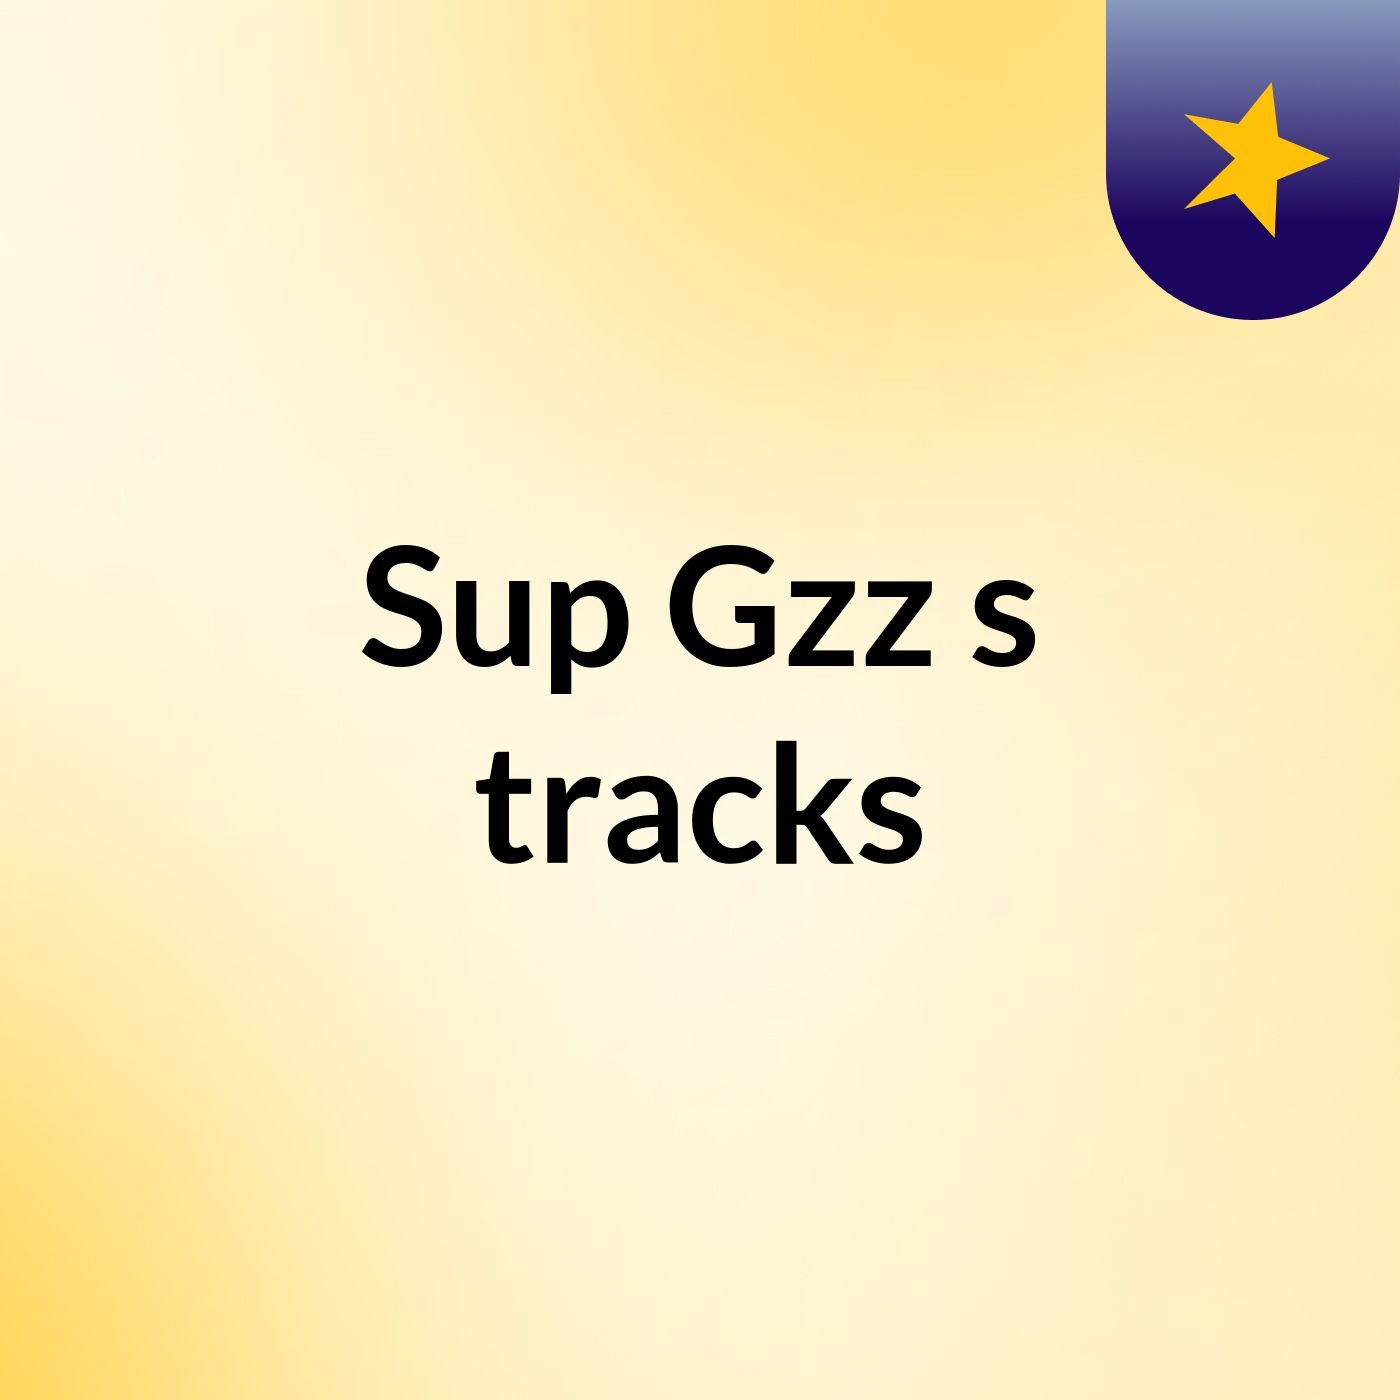 Sup Gzz's tracks